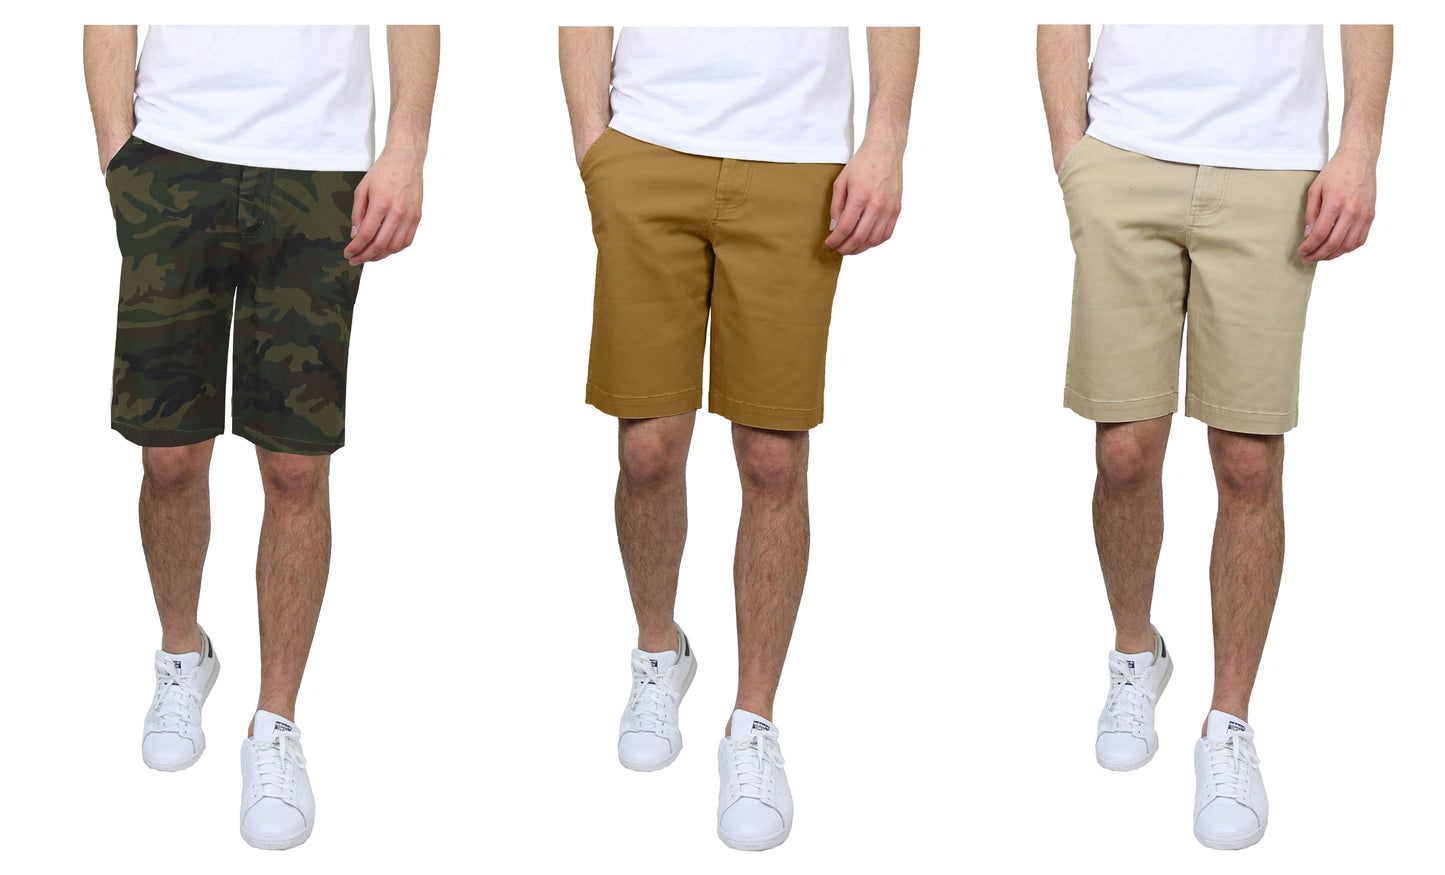 Paquete de 3 pantalones cortos chinos elásticos de algodón con frente plano y corte entallado para hombre (tallas 30-42)